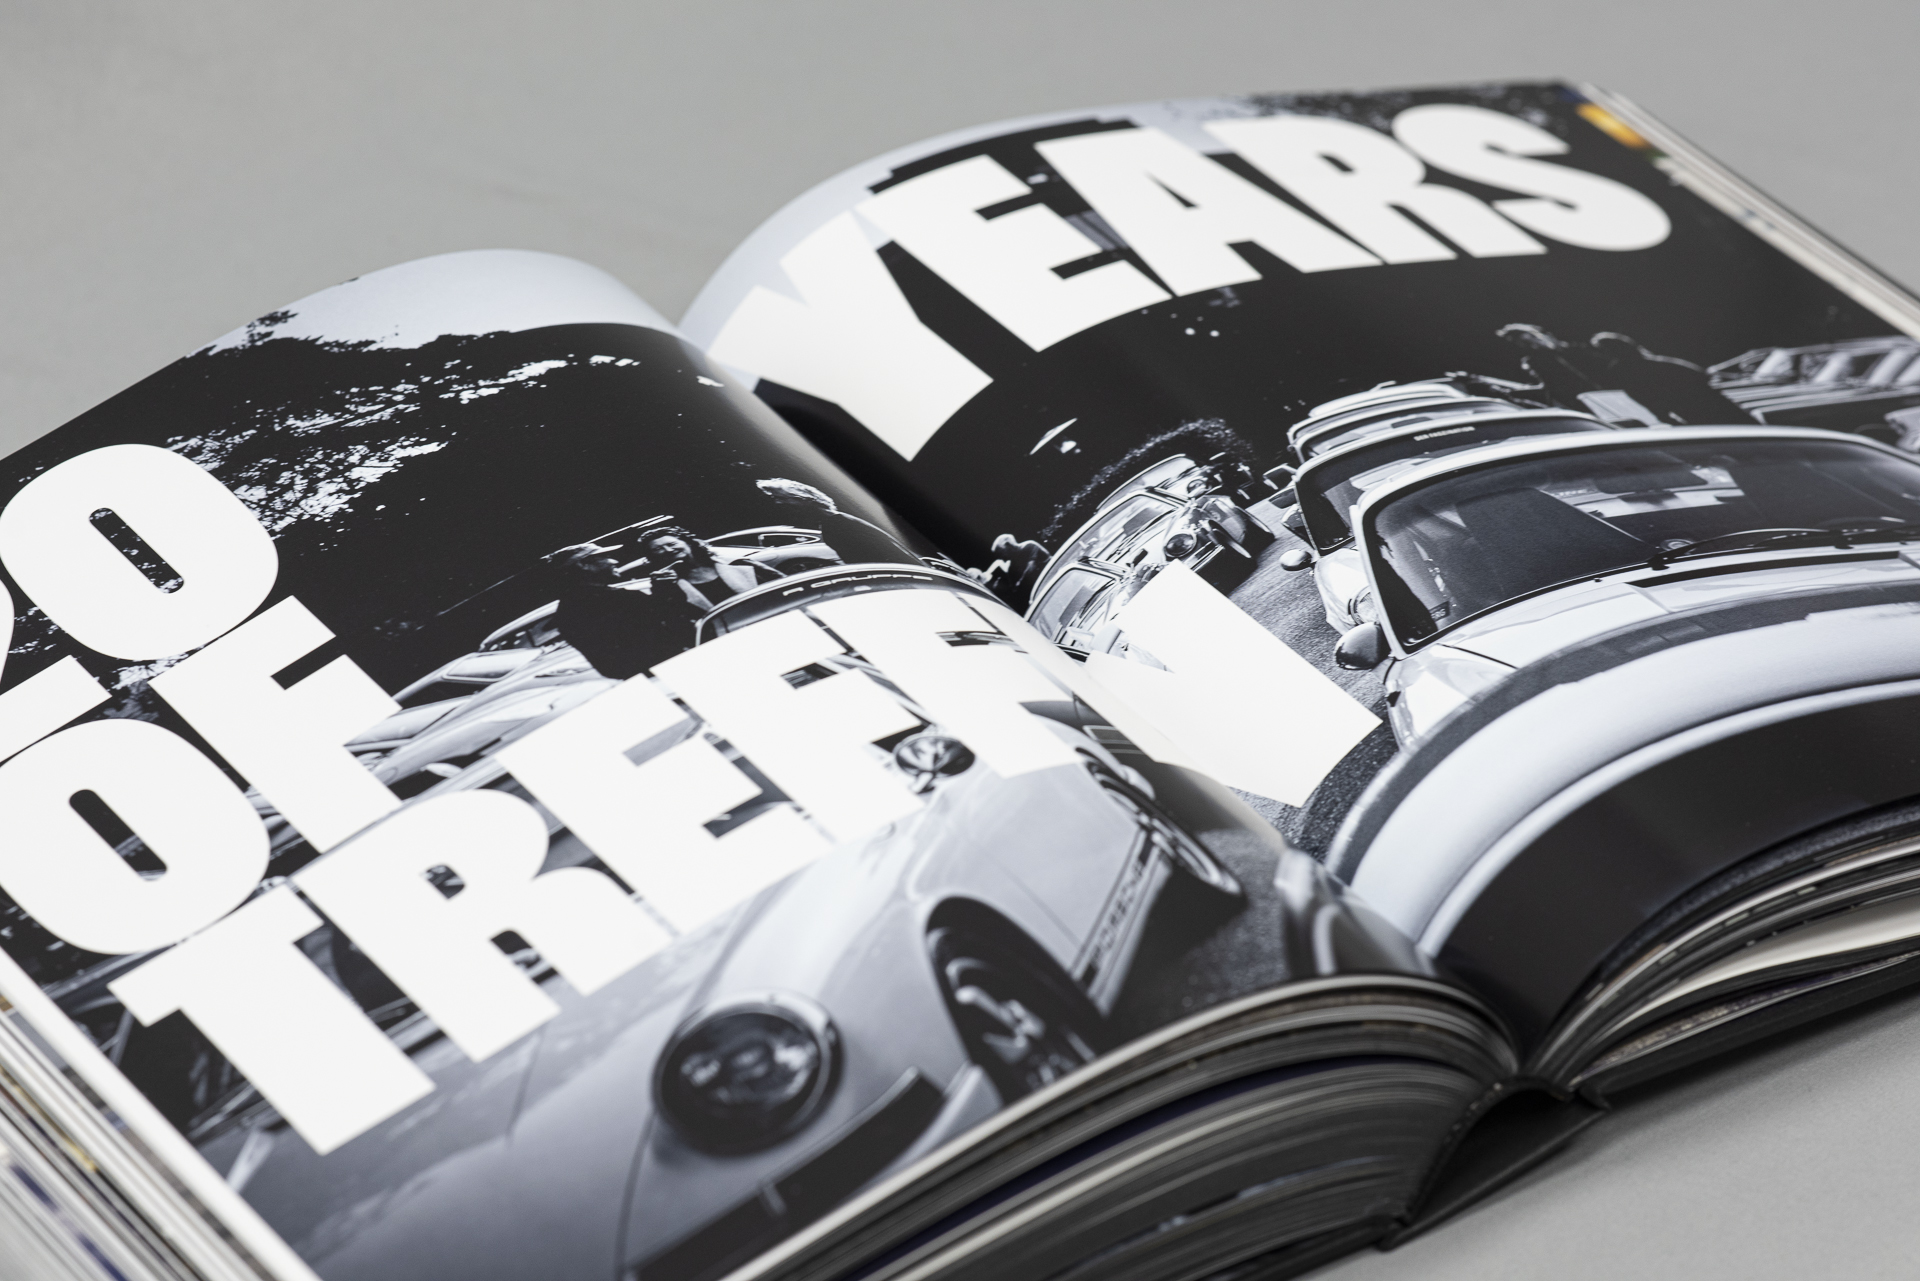 Kapitelaufmacherseite aus dem Buch Frank Kayser: R Gruppe die große Typografie sowie eine schwarz-weiß Aufnahme mehrerer Porsche zeigt.